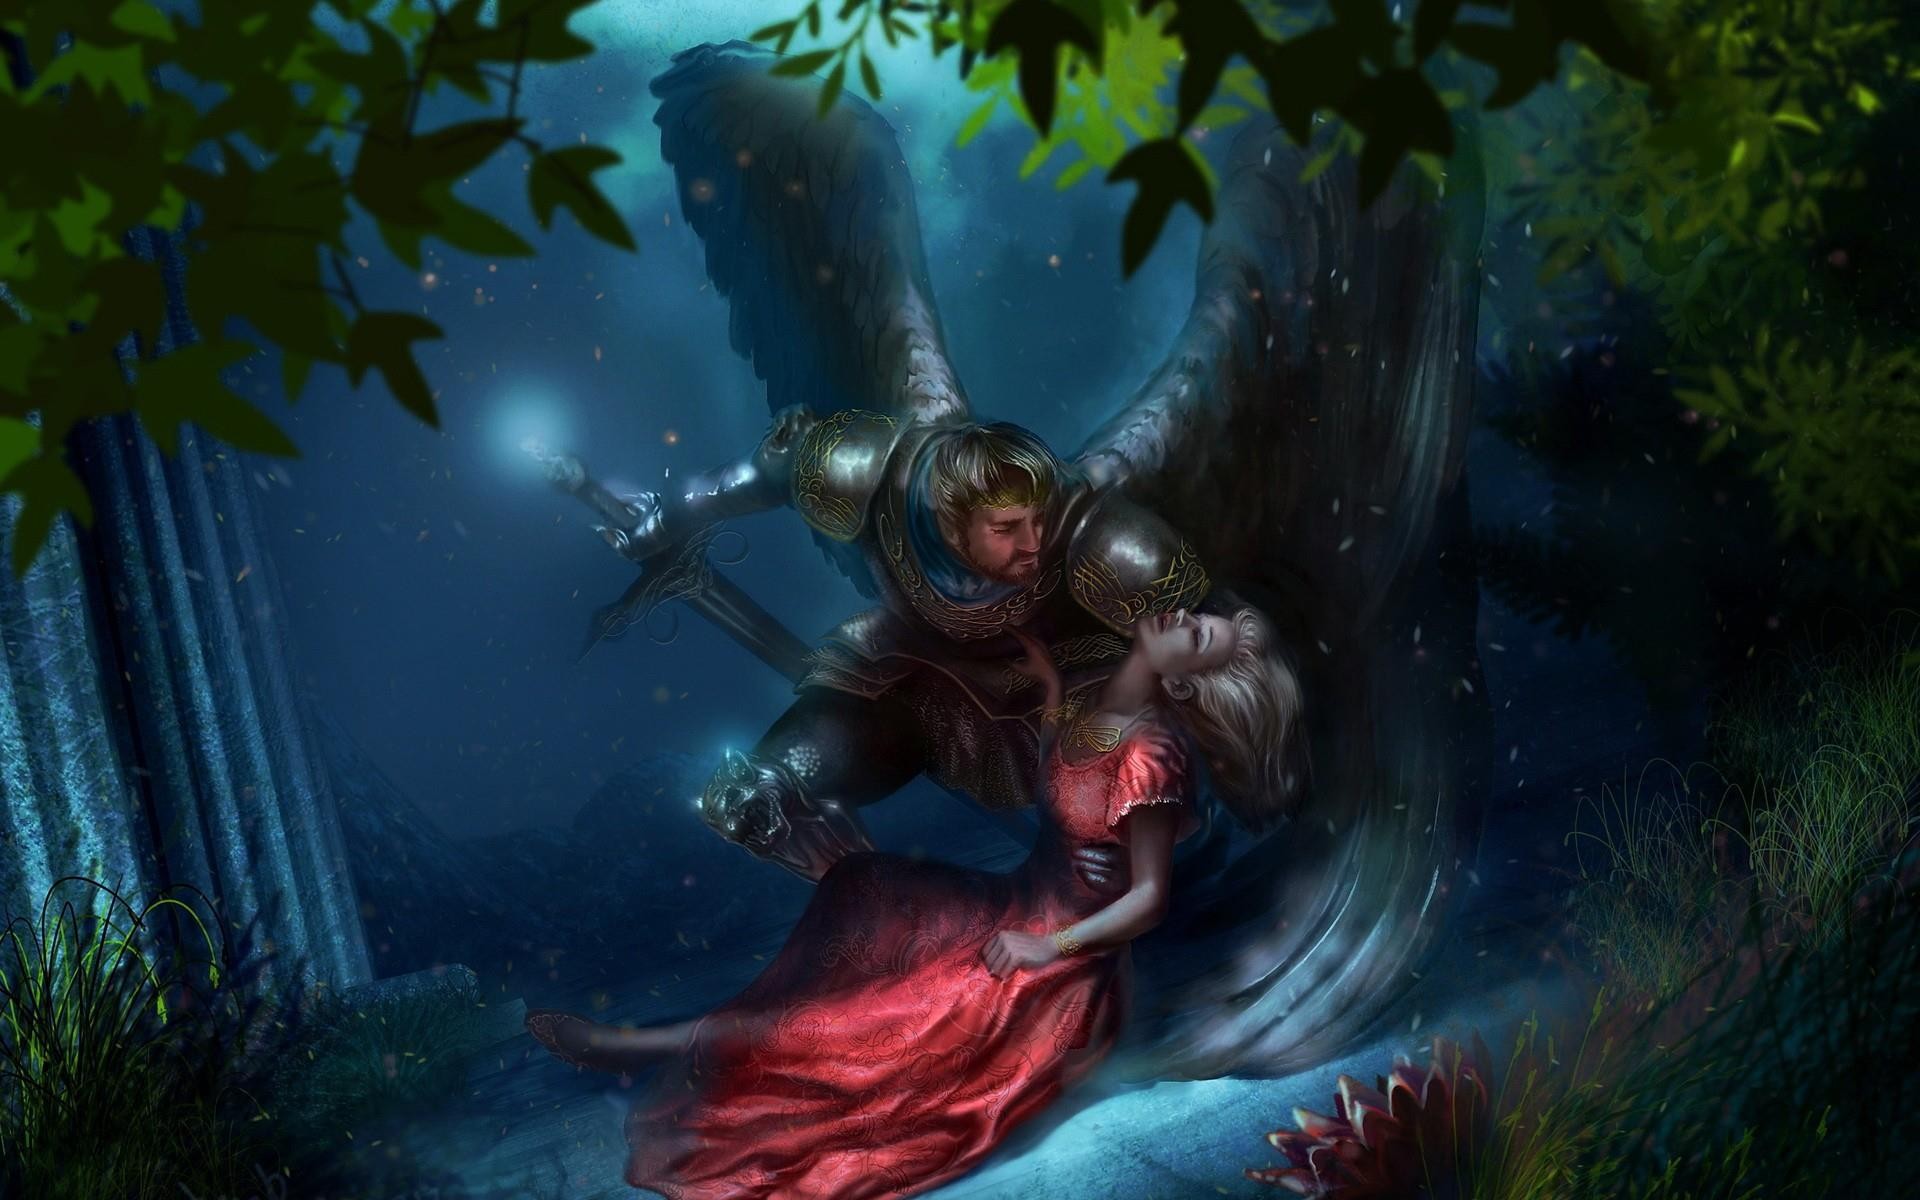 General 1920x1200 fantasy art fantasy girl knight fantasy men sword red dress dress men women dead